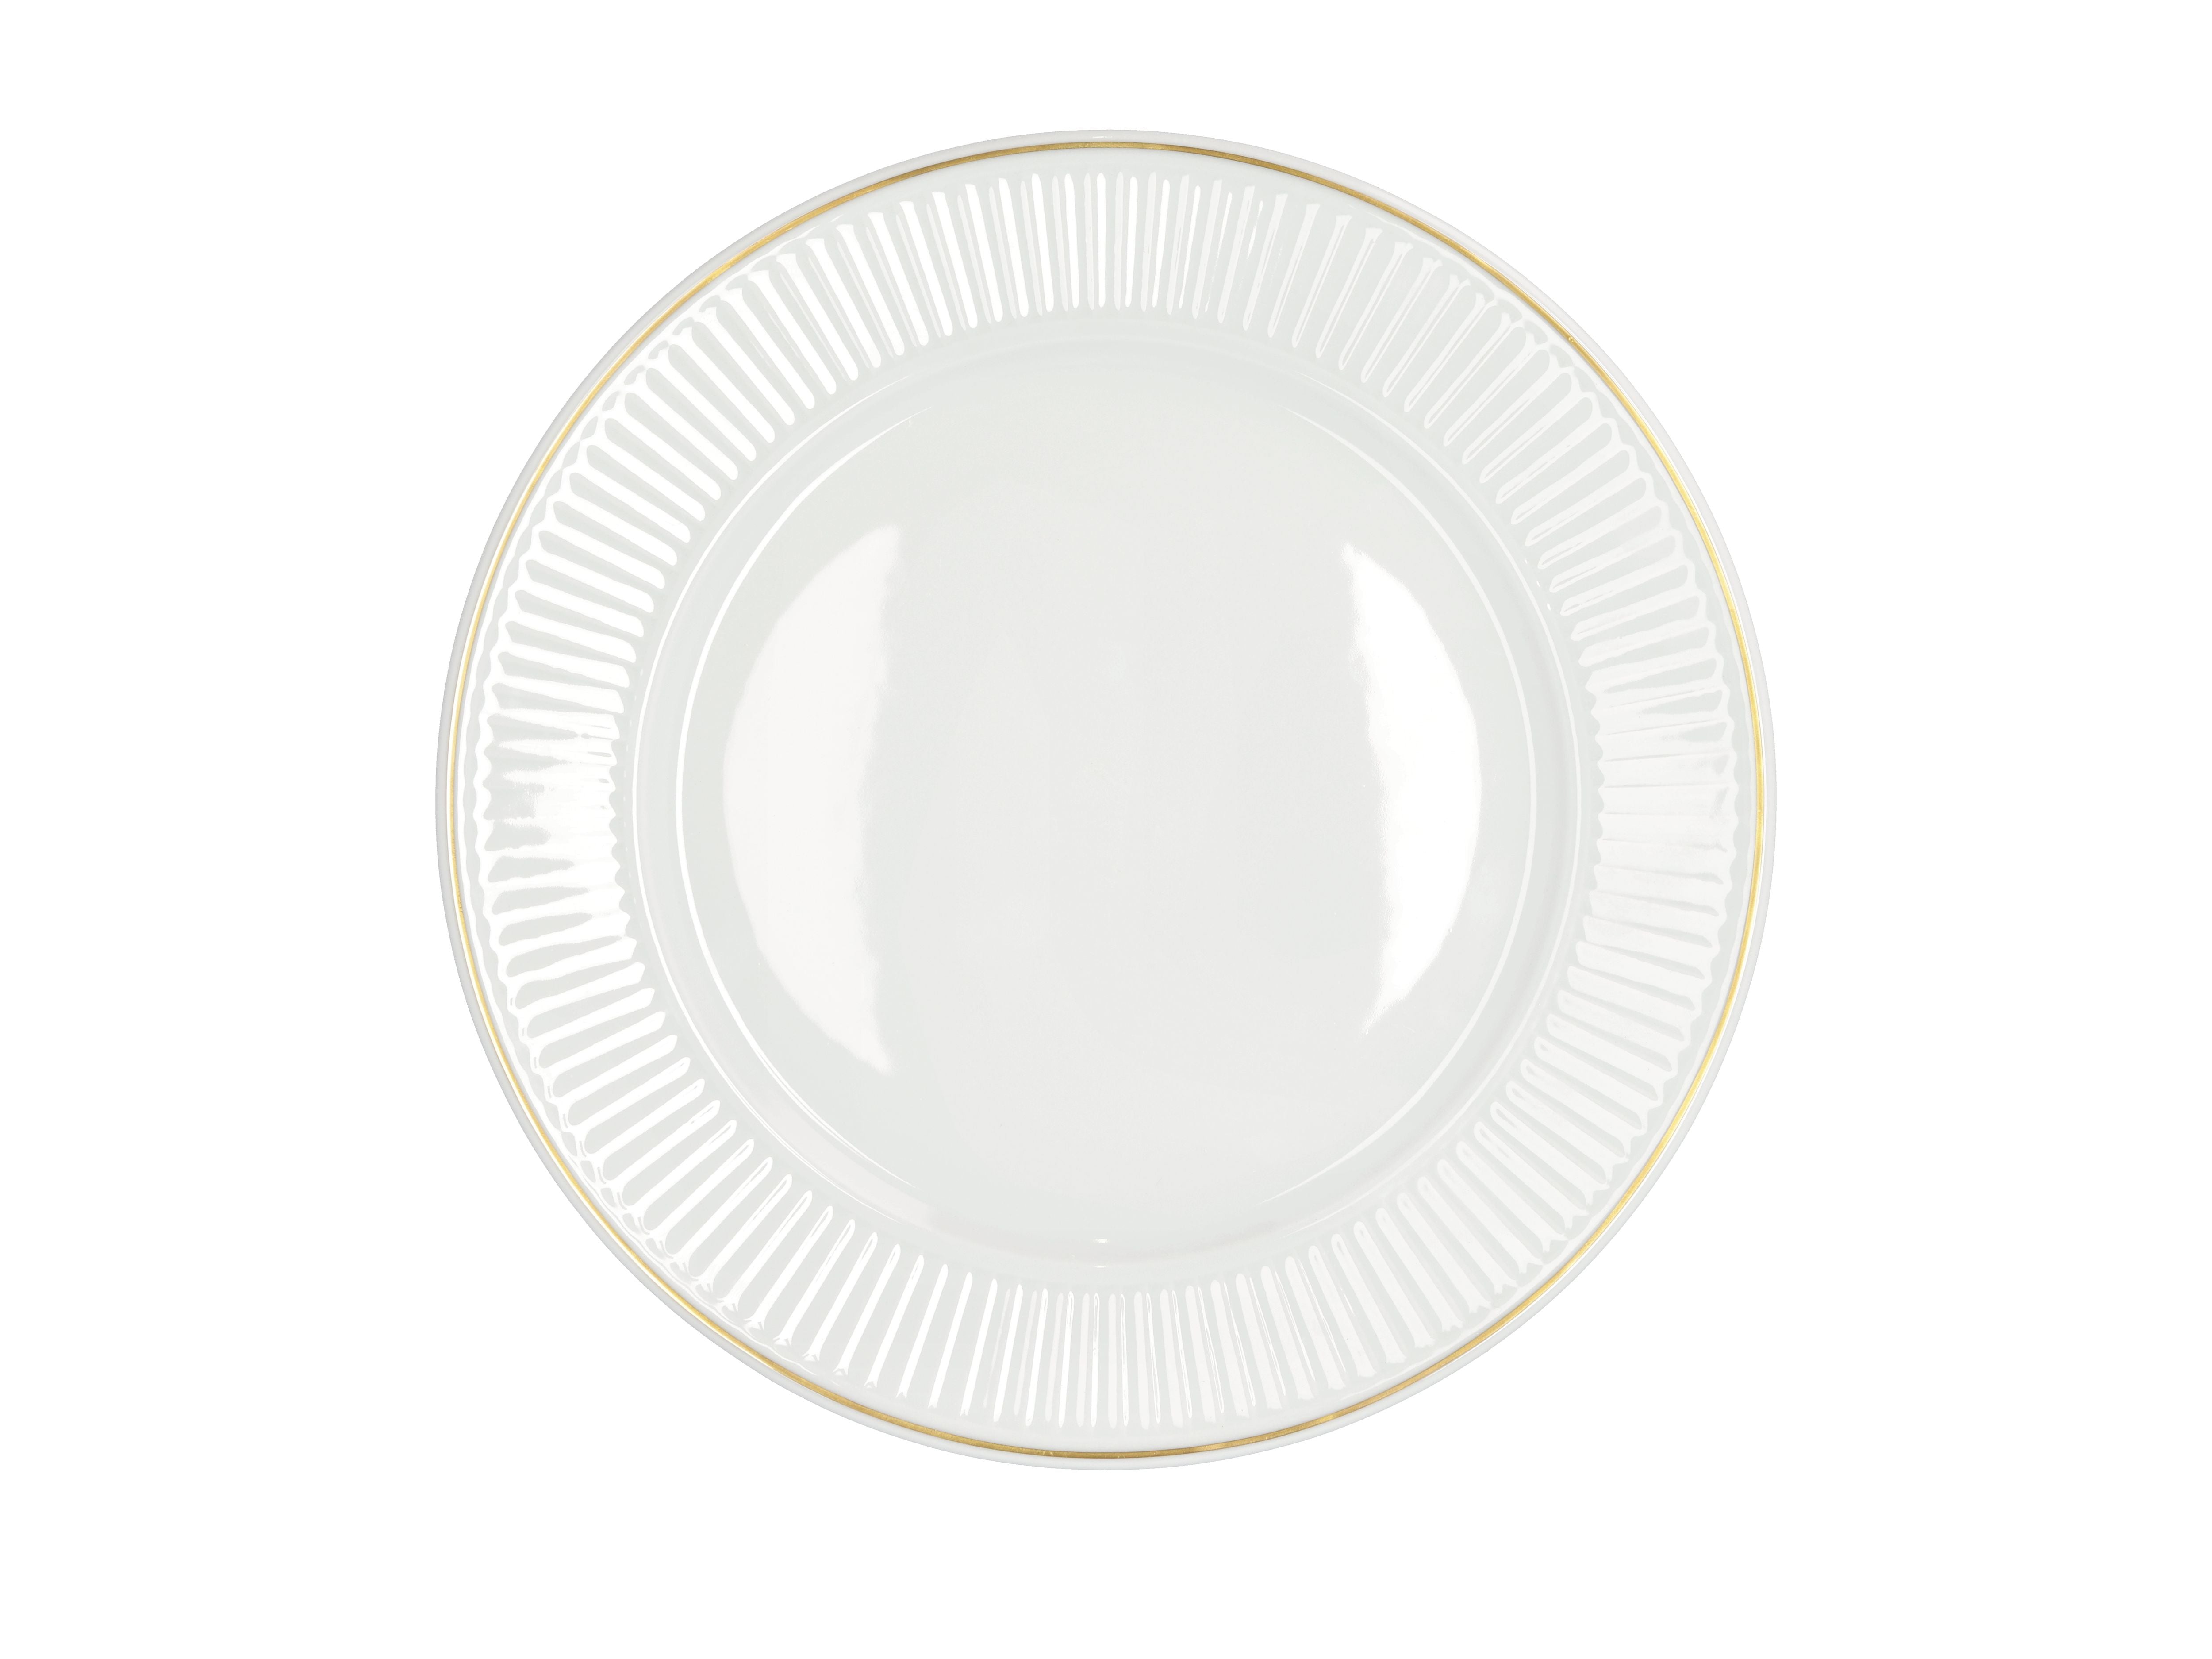 Pillivuyt Plissé Plate White/Matte Gold, Ø28 cm